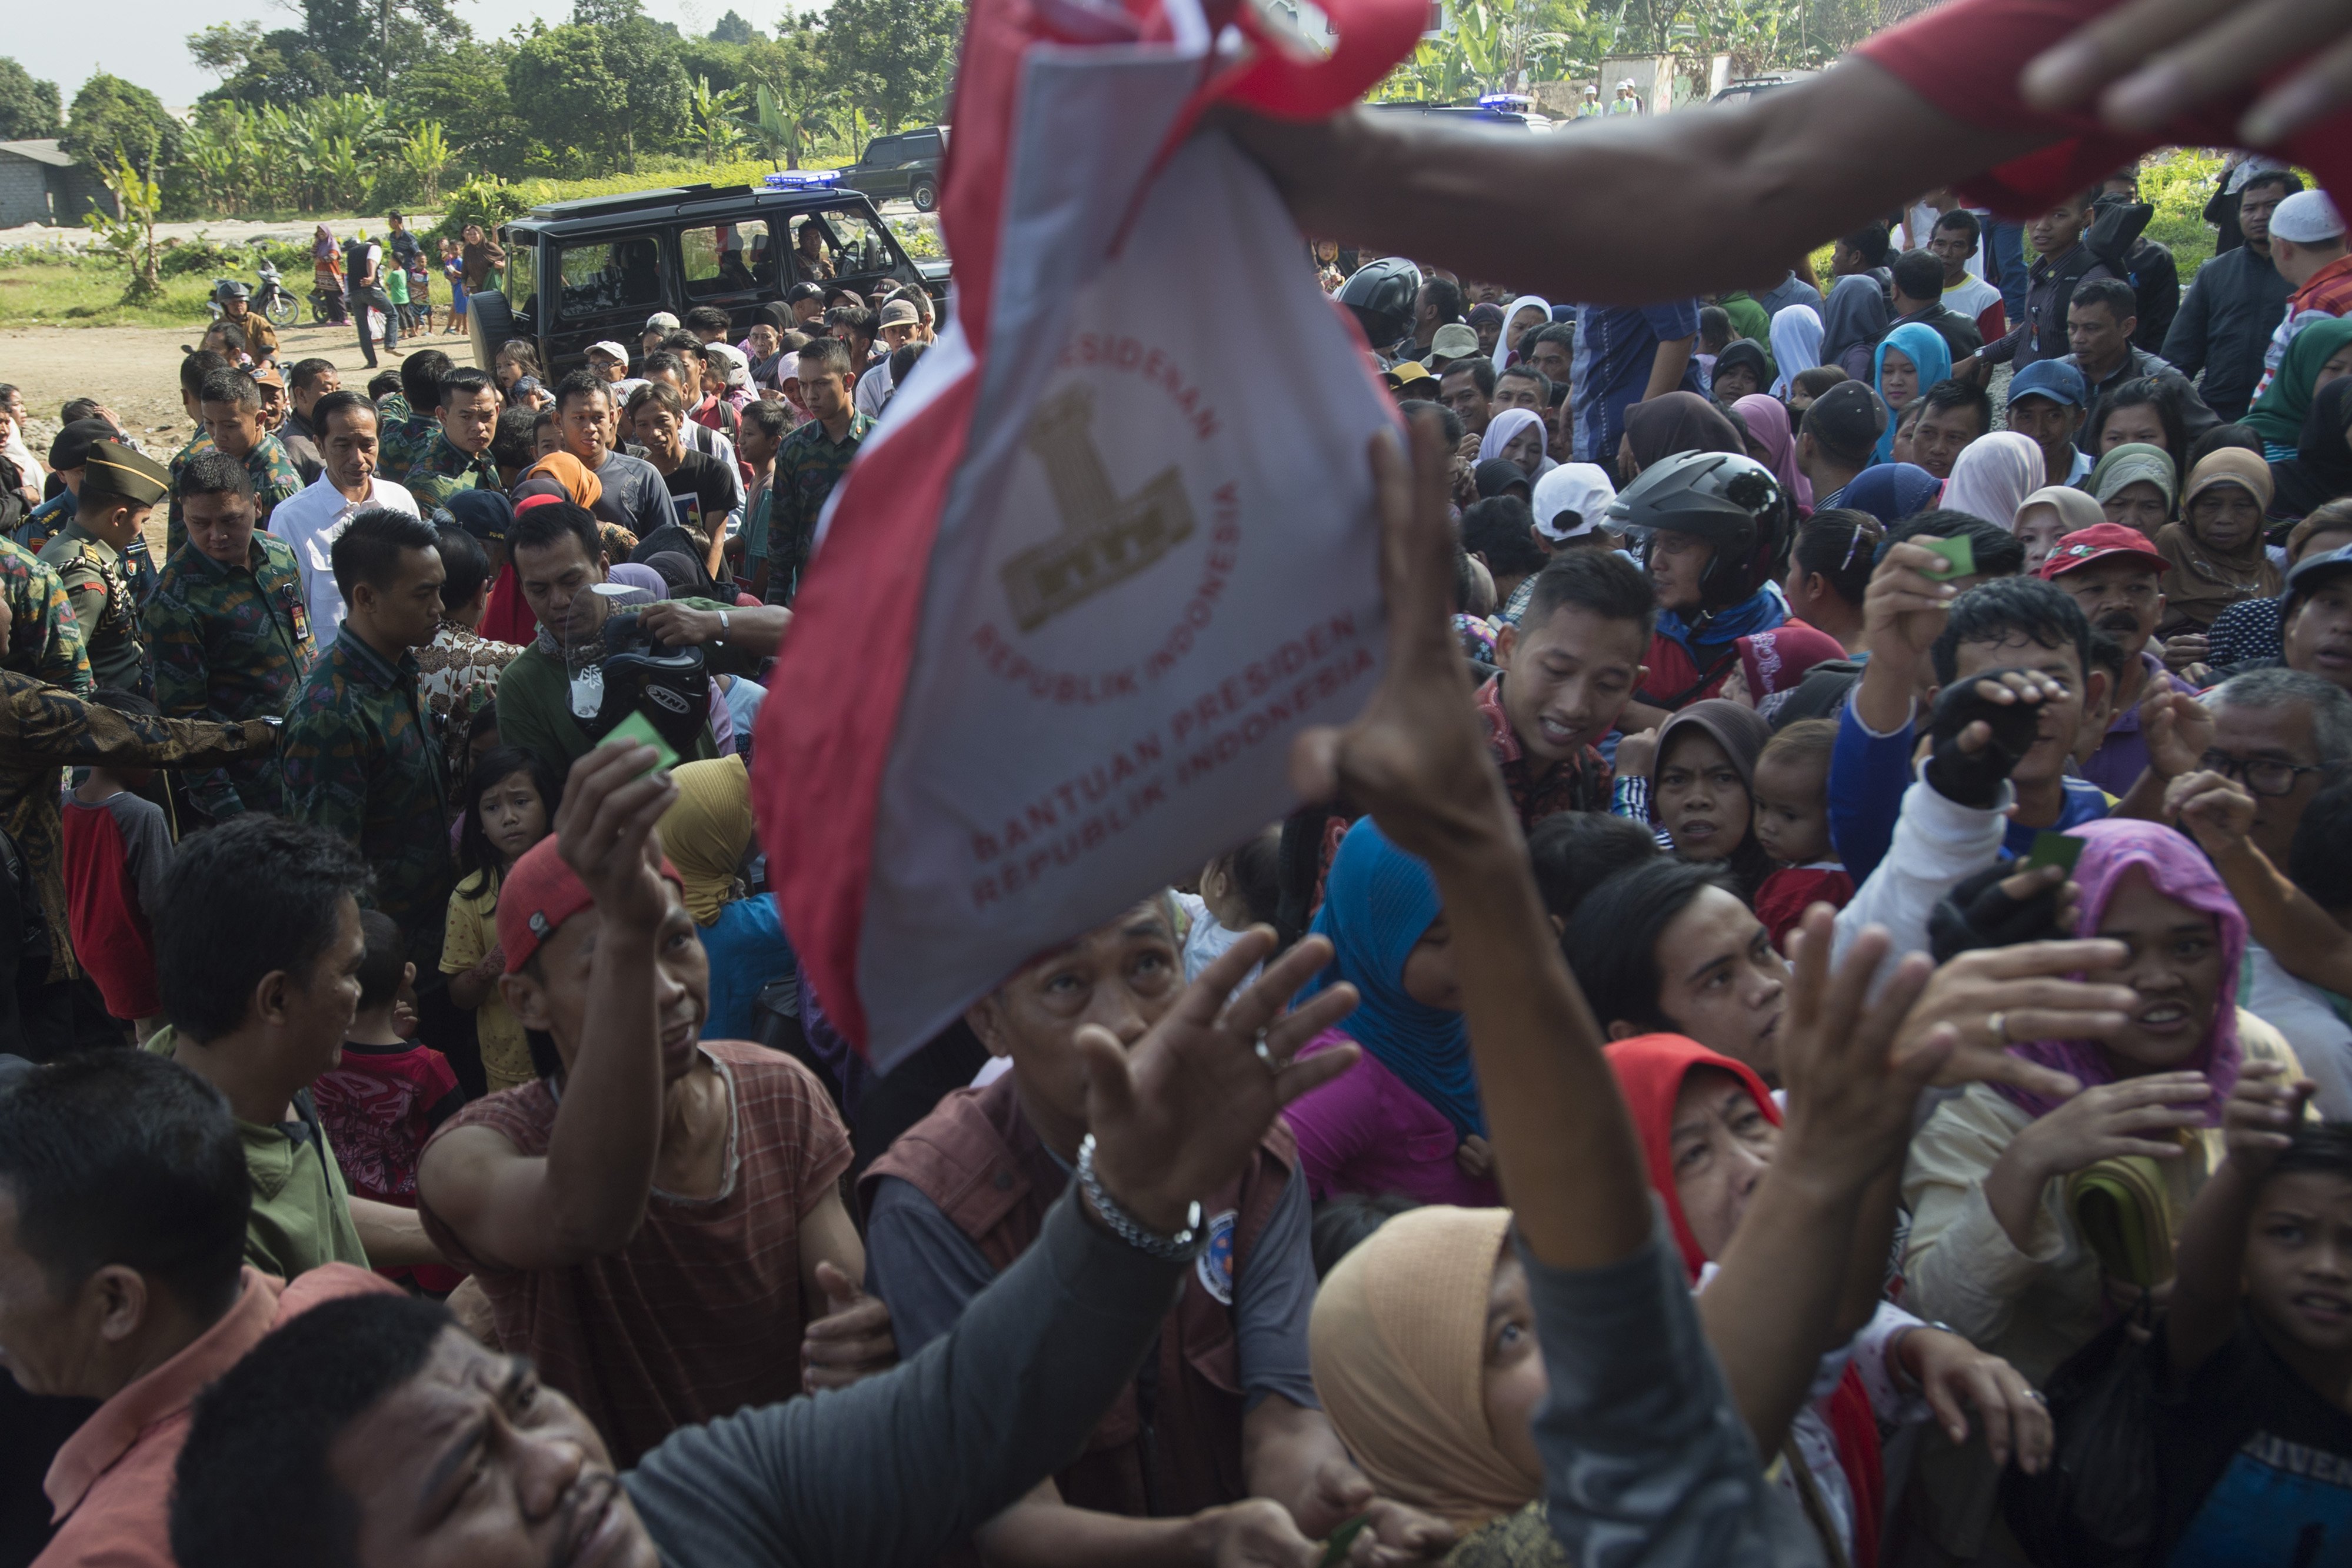 Presiden Joko Widodo (kiri) memantau pembagian sembako kepada warga di Kampung Ciawi, Kota Bogor, Jawa Barat, Rabu (21/6). Sebanyak 3.000 paket sembako dibagikan dalam kegiatan tersebut. 